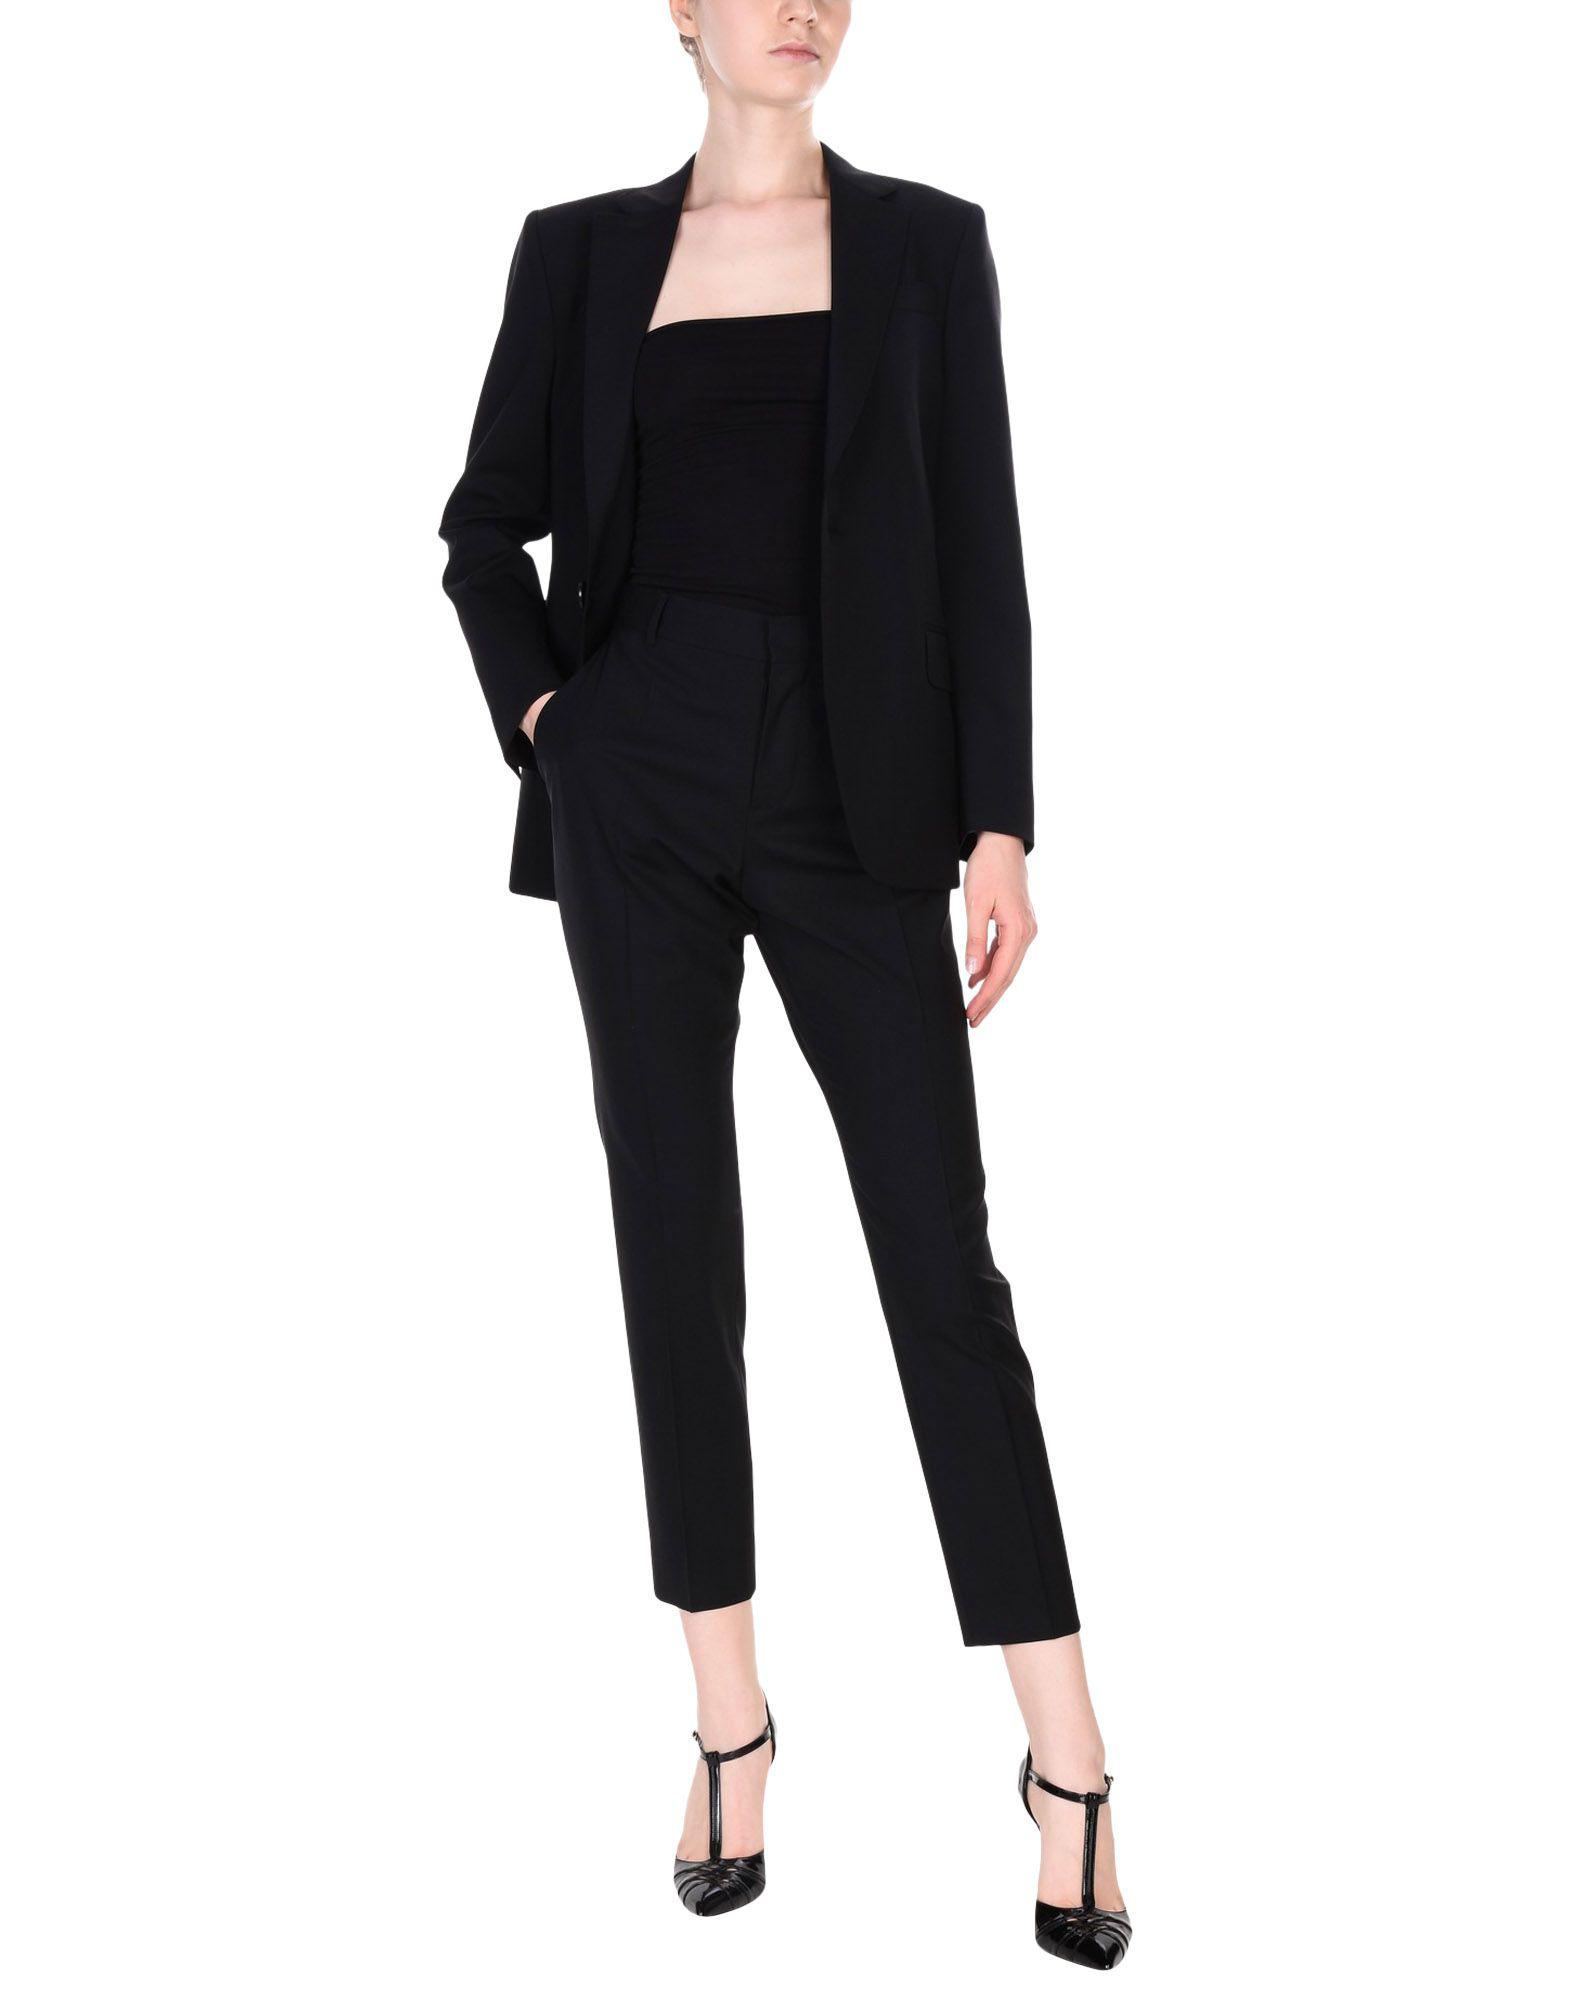 DSquared² Wool Women's Suit in Black - Lyst